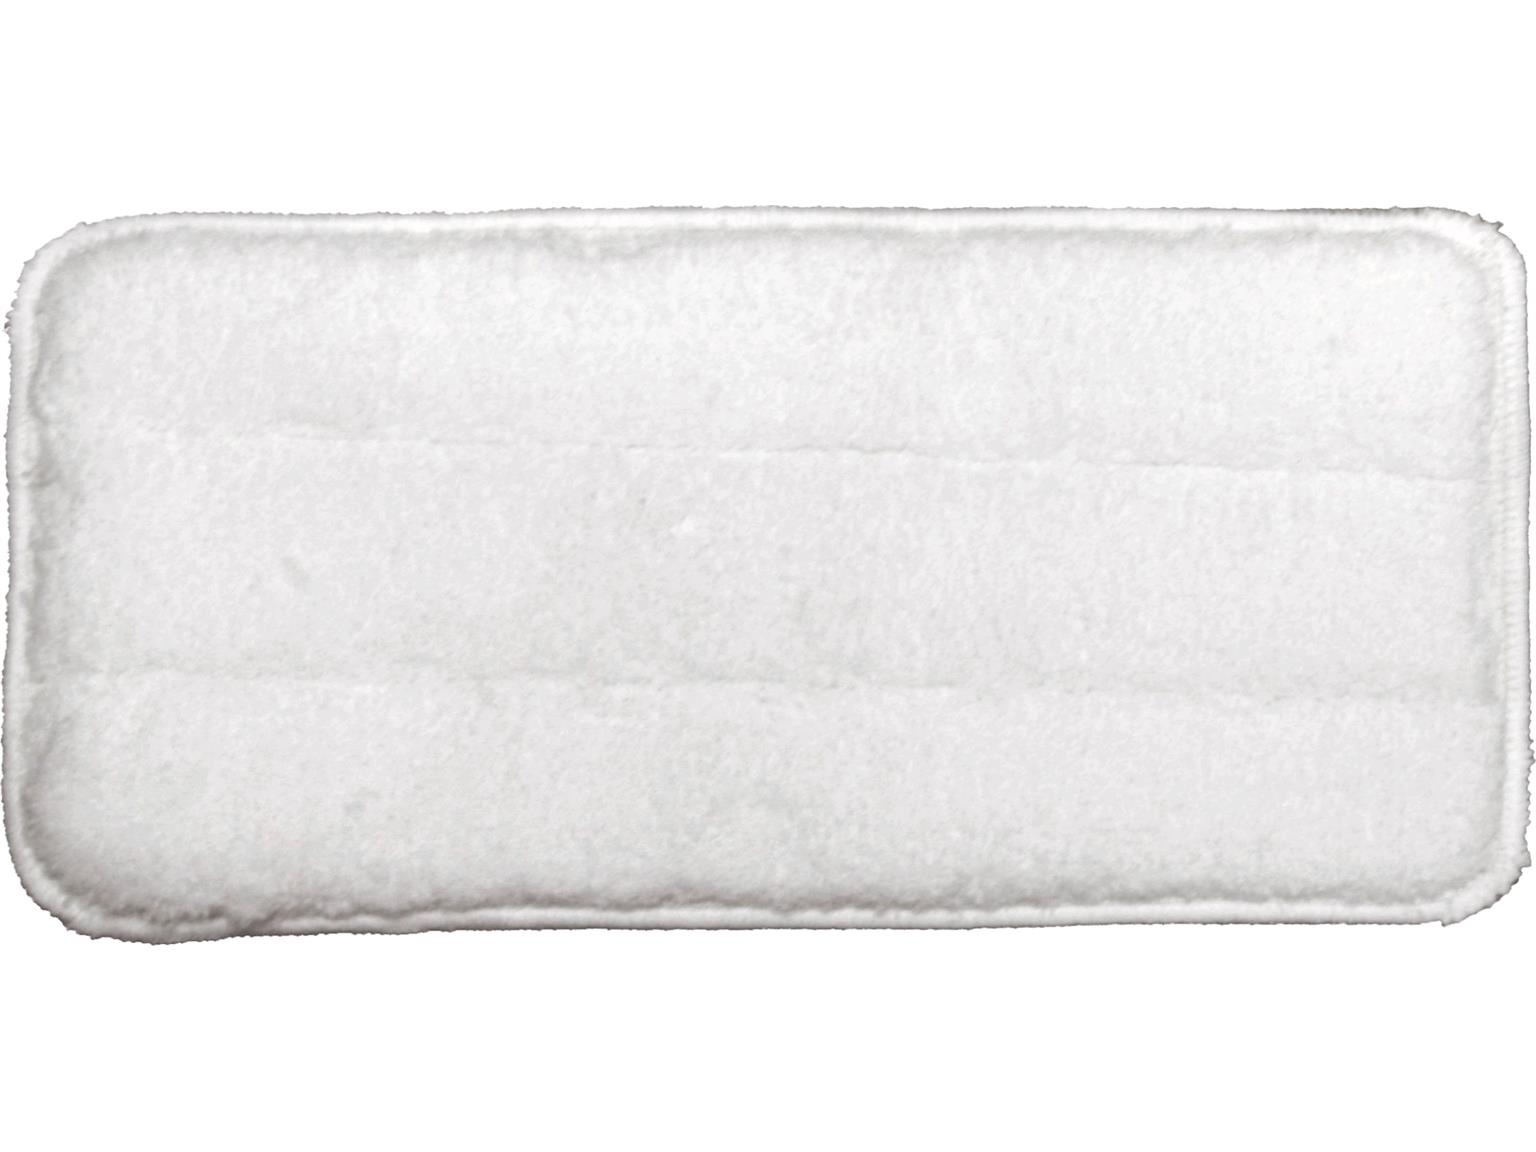 NUMATIC SERVICEWAGEN-ZUBEHÖR  Handpad Klett, 27 x 13 cm, weiß 100% Mic